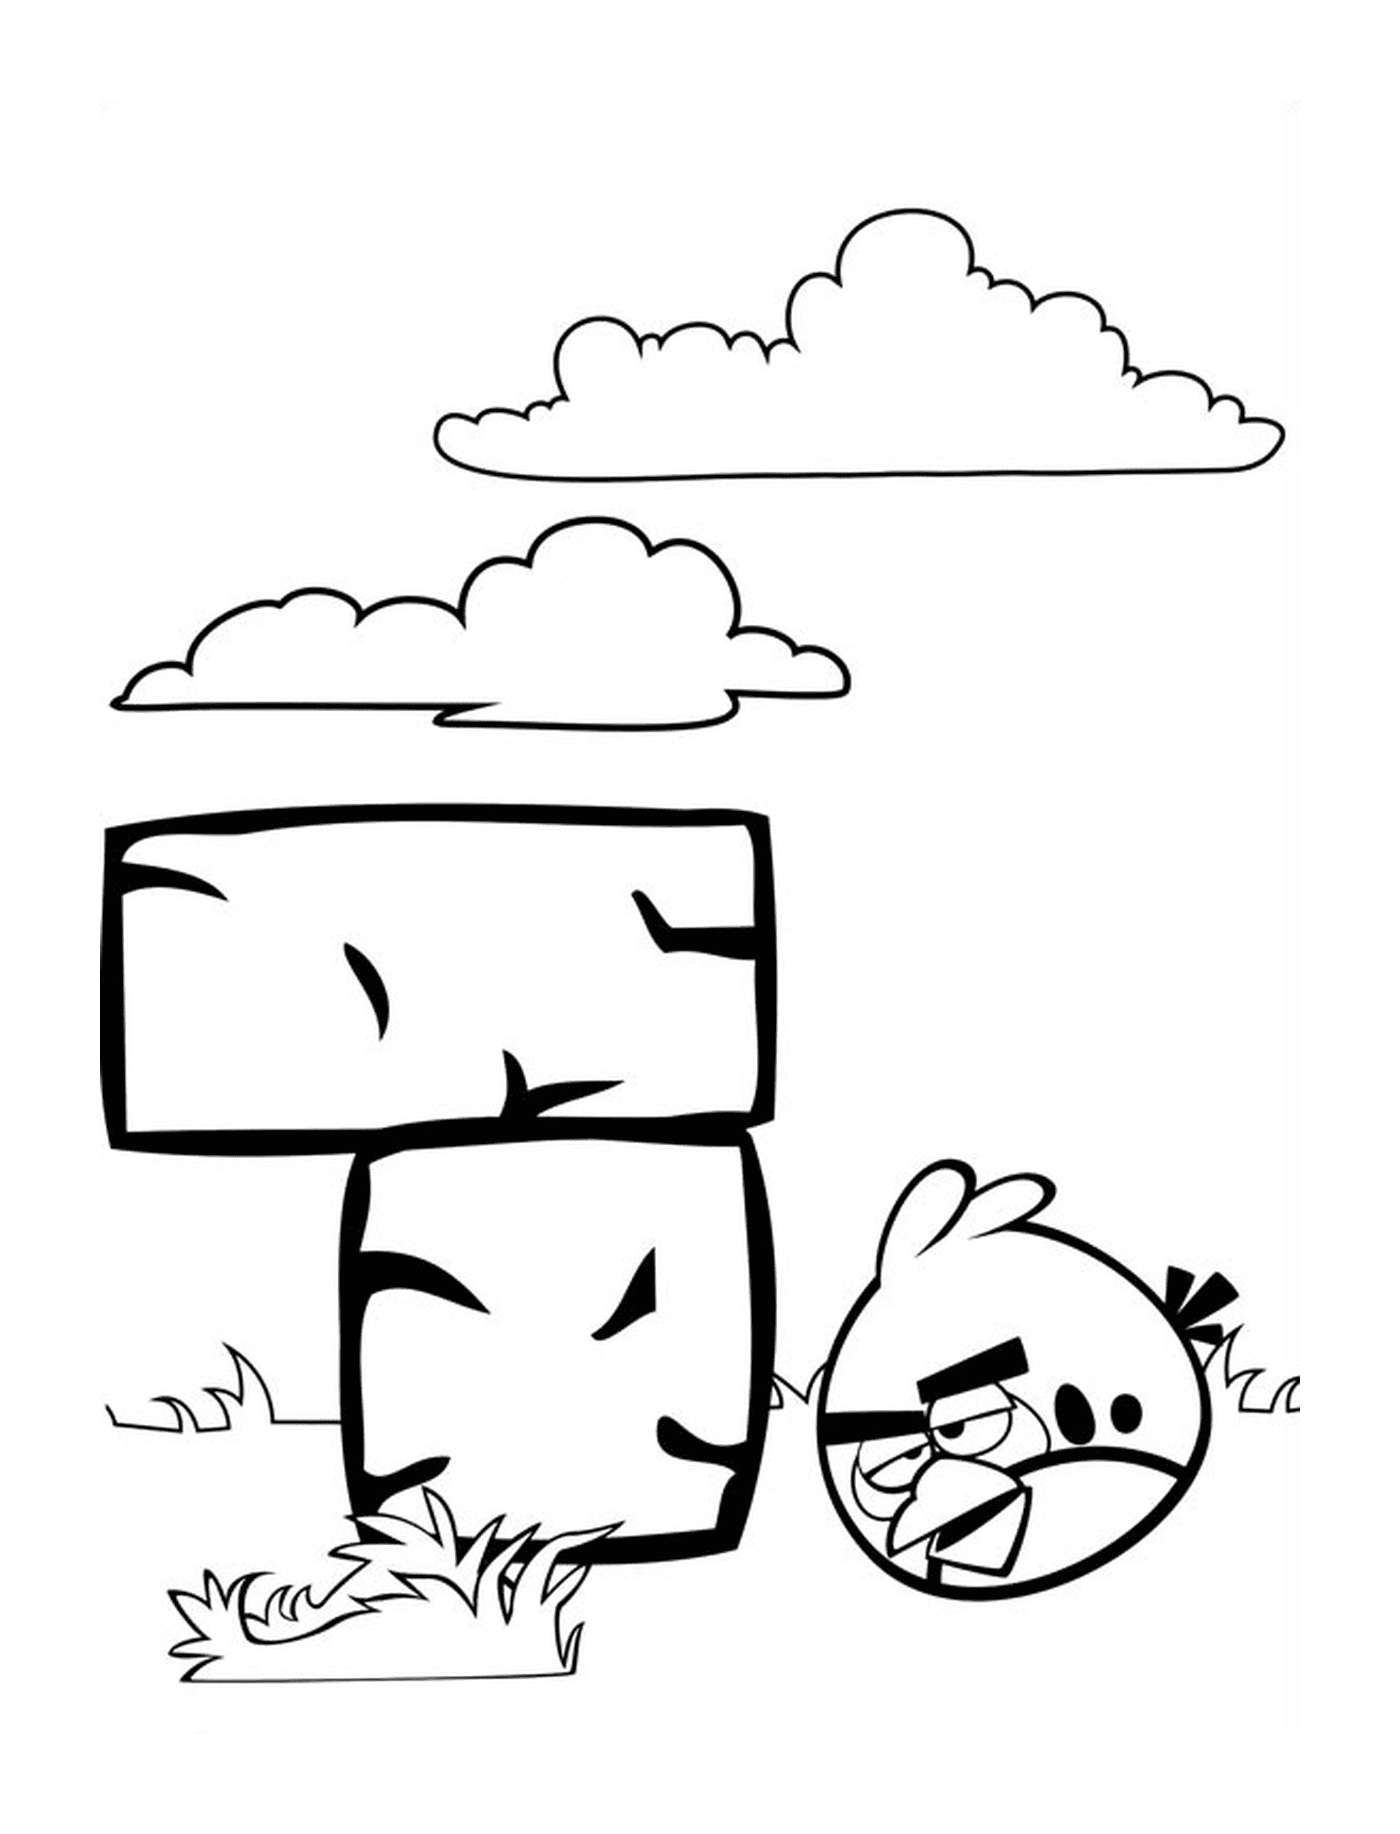   Angry Birds face à des briques 